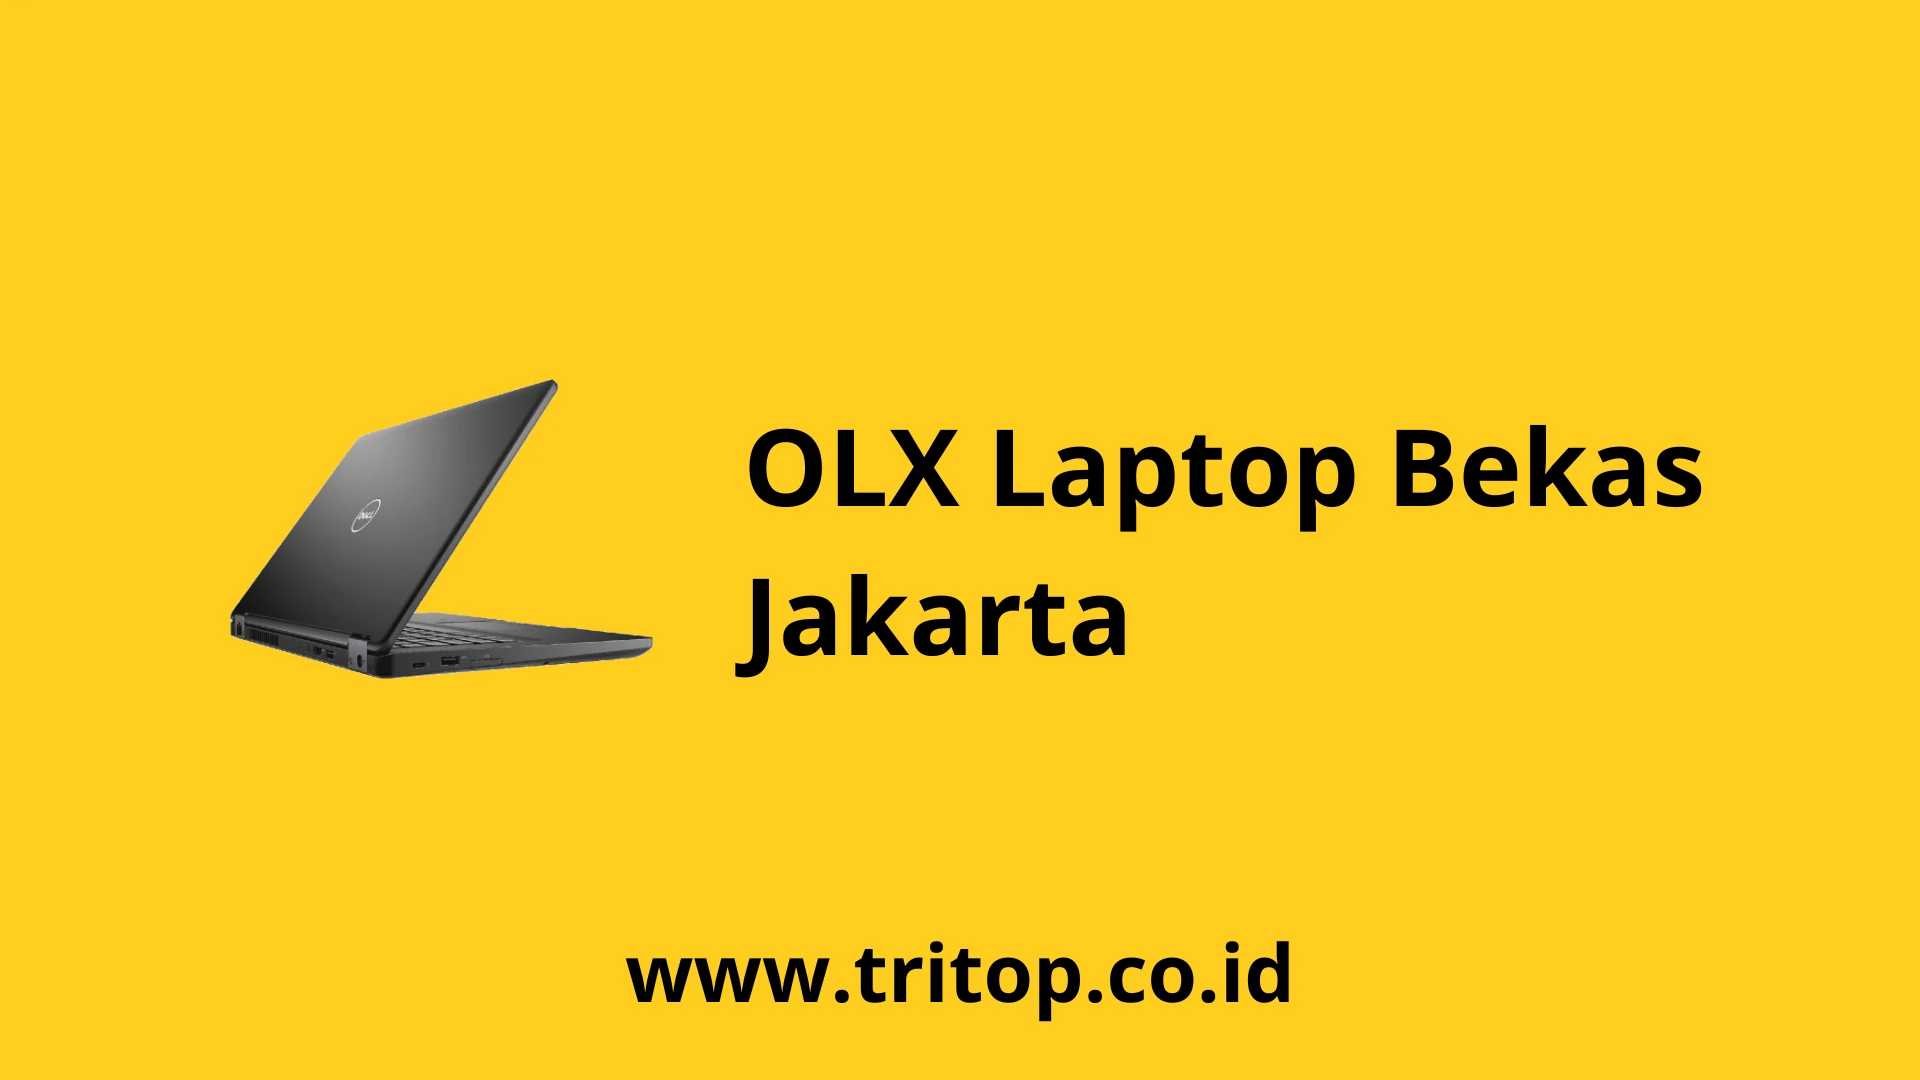 OLX Laptop Bekas Jakarta